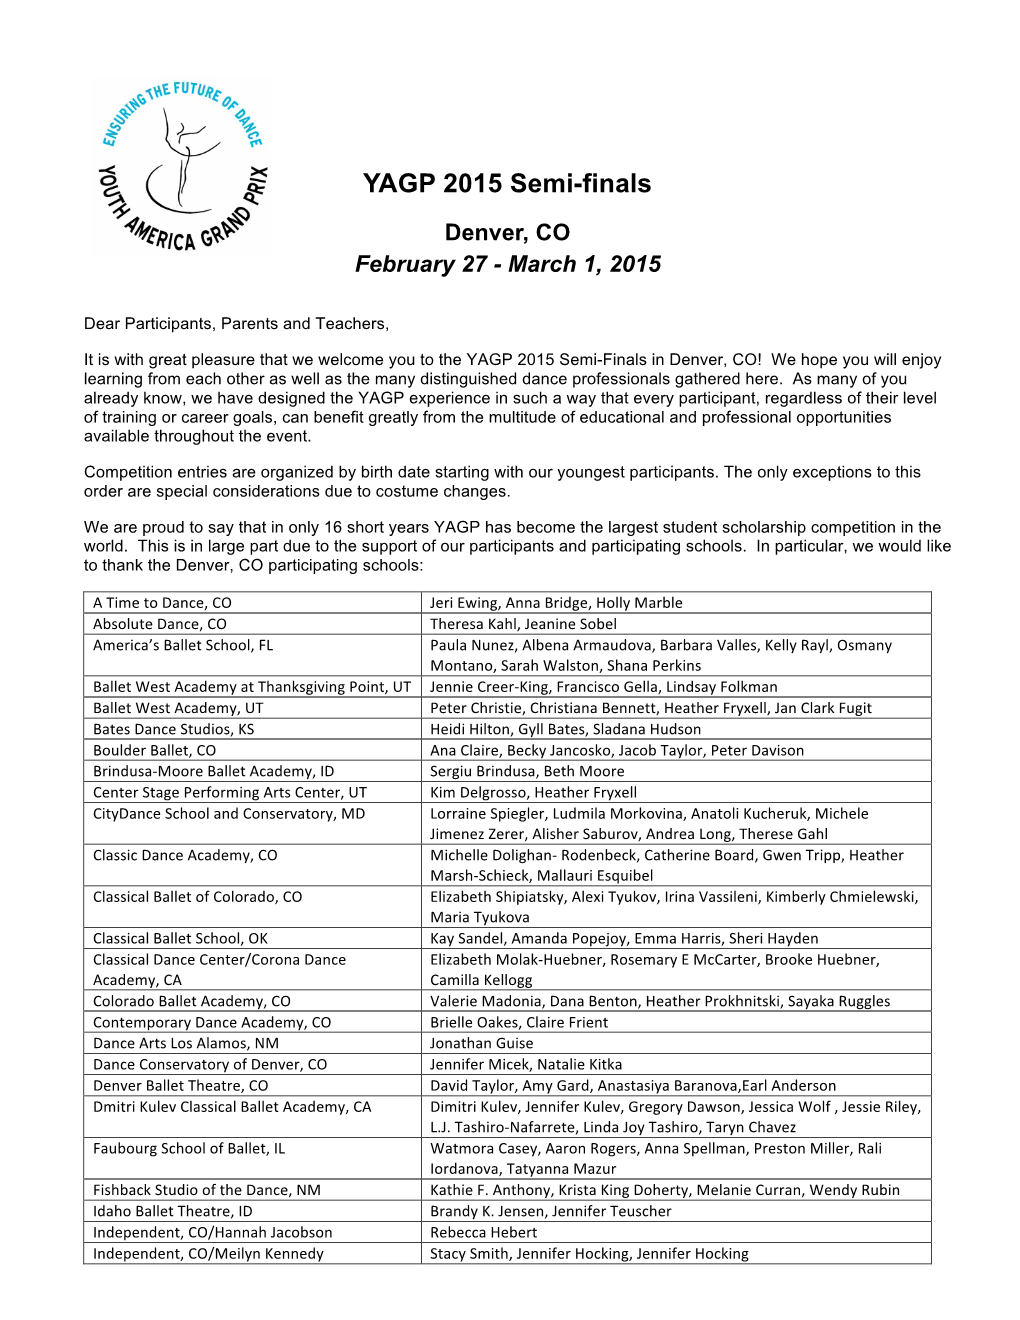 YAGP 2015 Semi-Finals